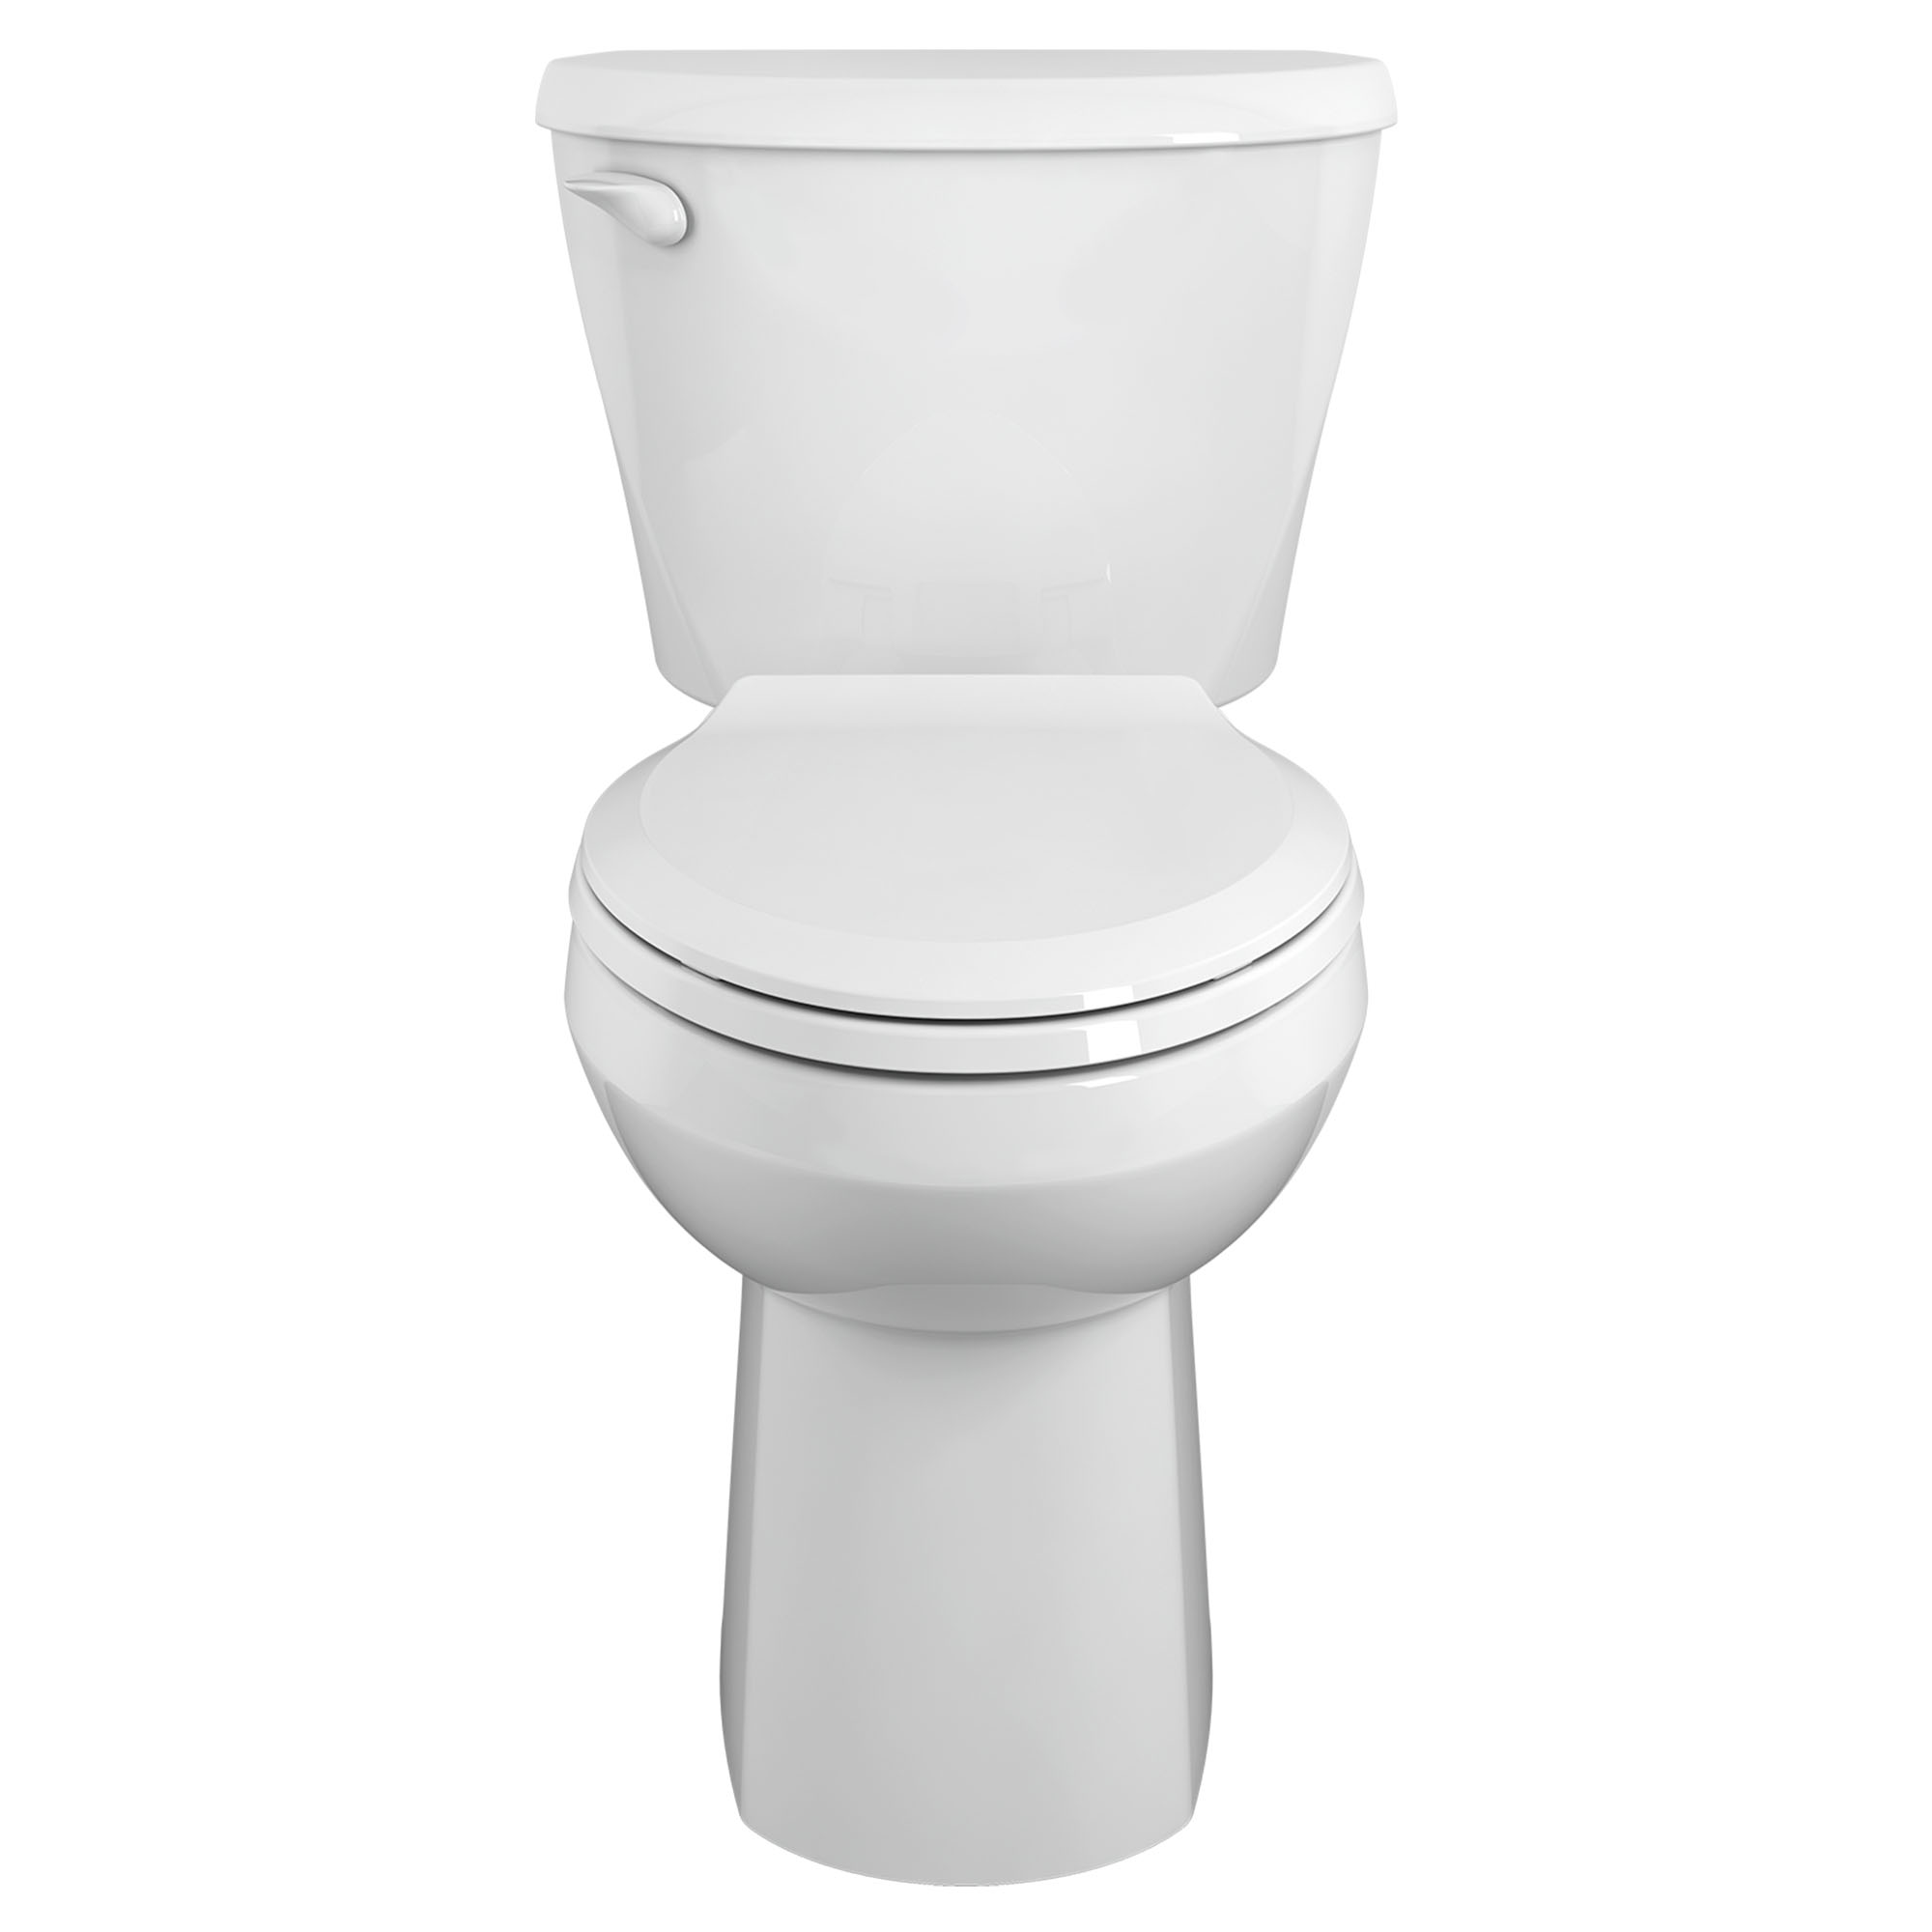 Toilette Colony, 2 pièces, 1,6 gpc/6,0 lpc, à cuvette allongée à hauteur de chaise, sans siège